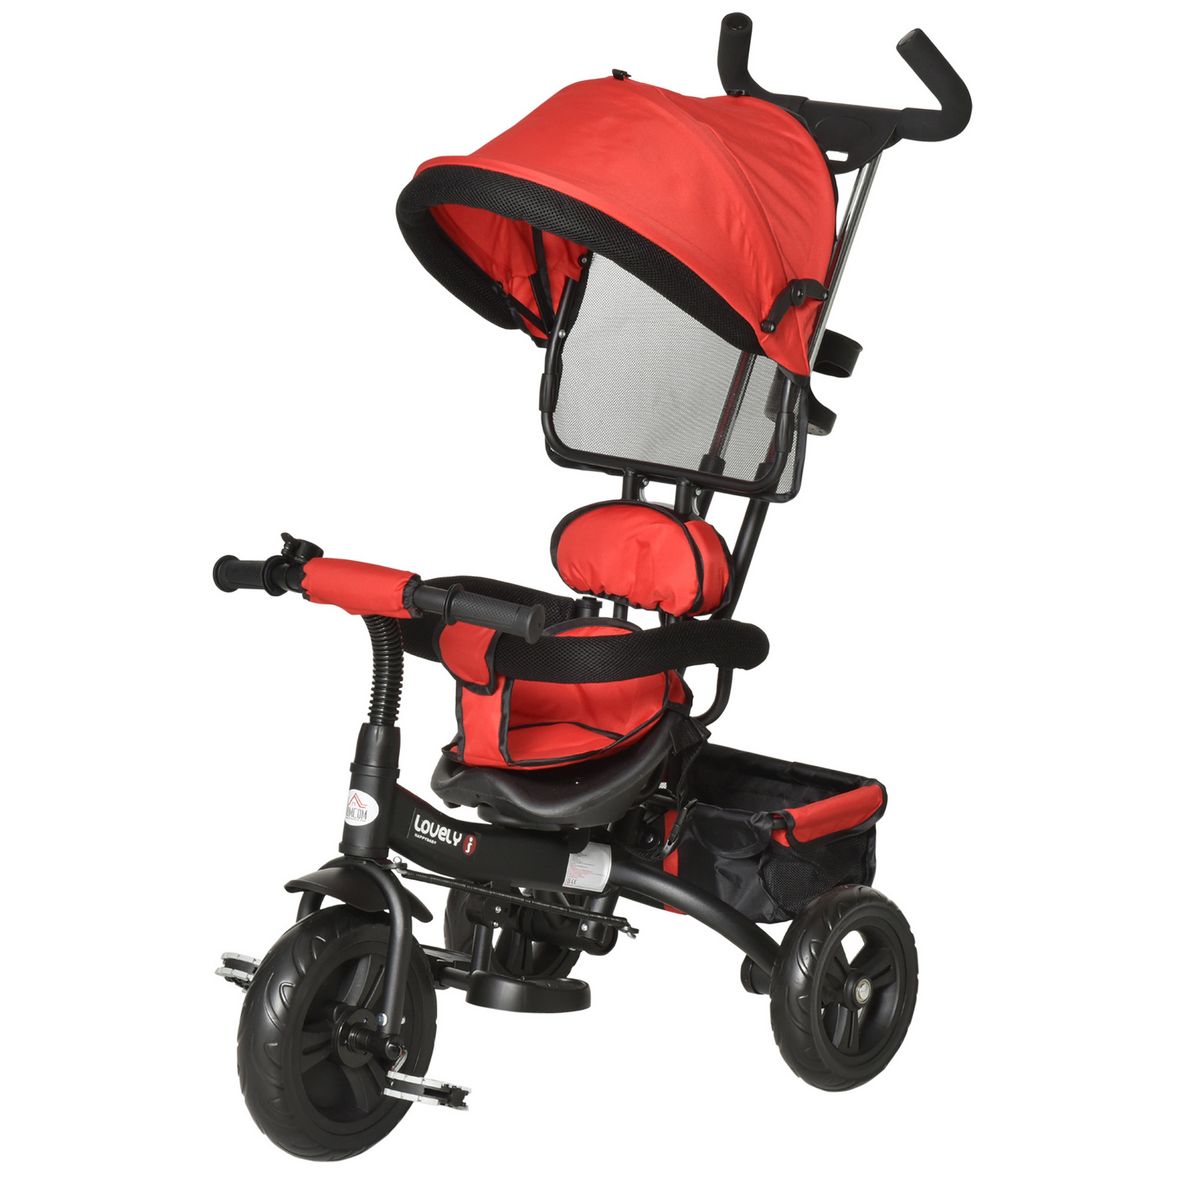 HOMCOM Tricycle 4 en 1 pour enfants, tricycle pour bébé avec poignée de  poussée réglable, repose-pieds amovible pour 18-60 mois, rouge